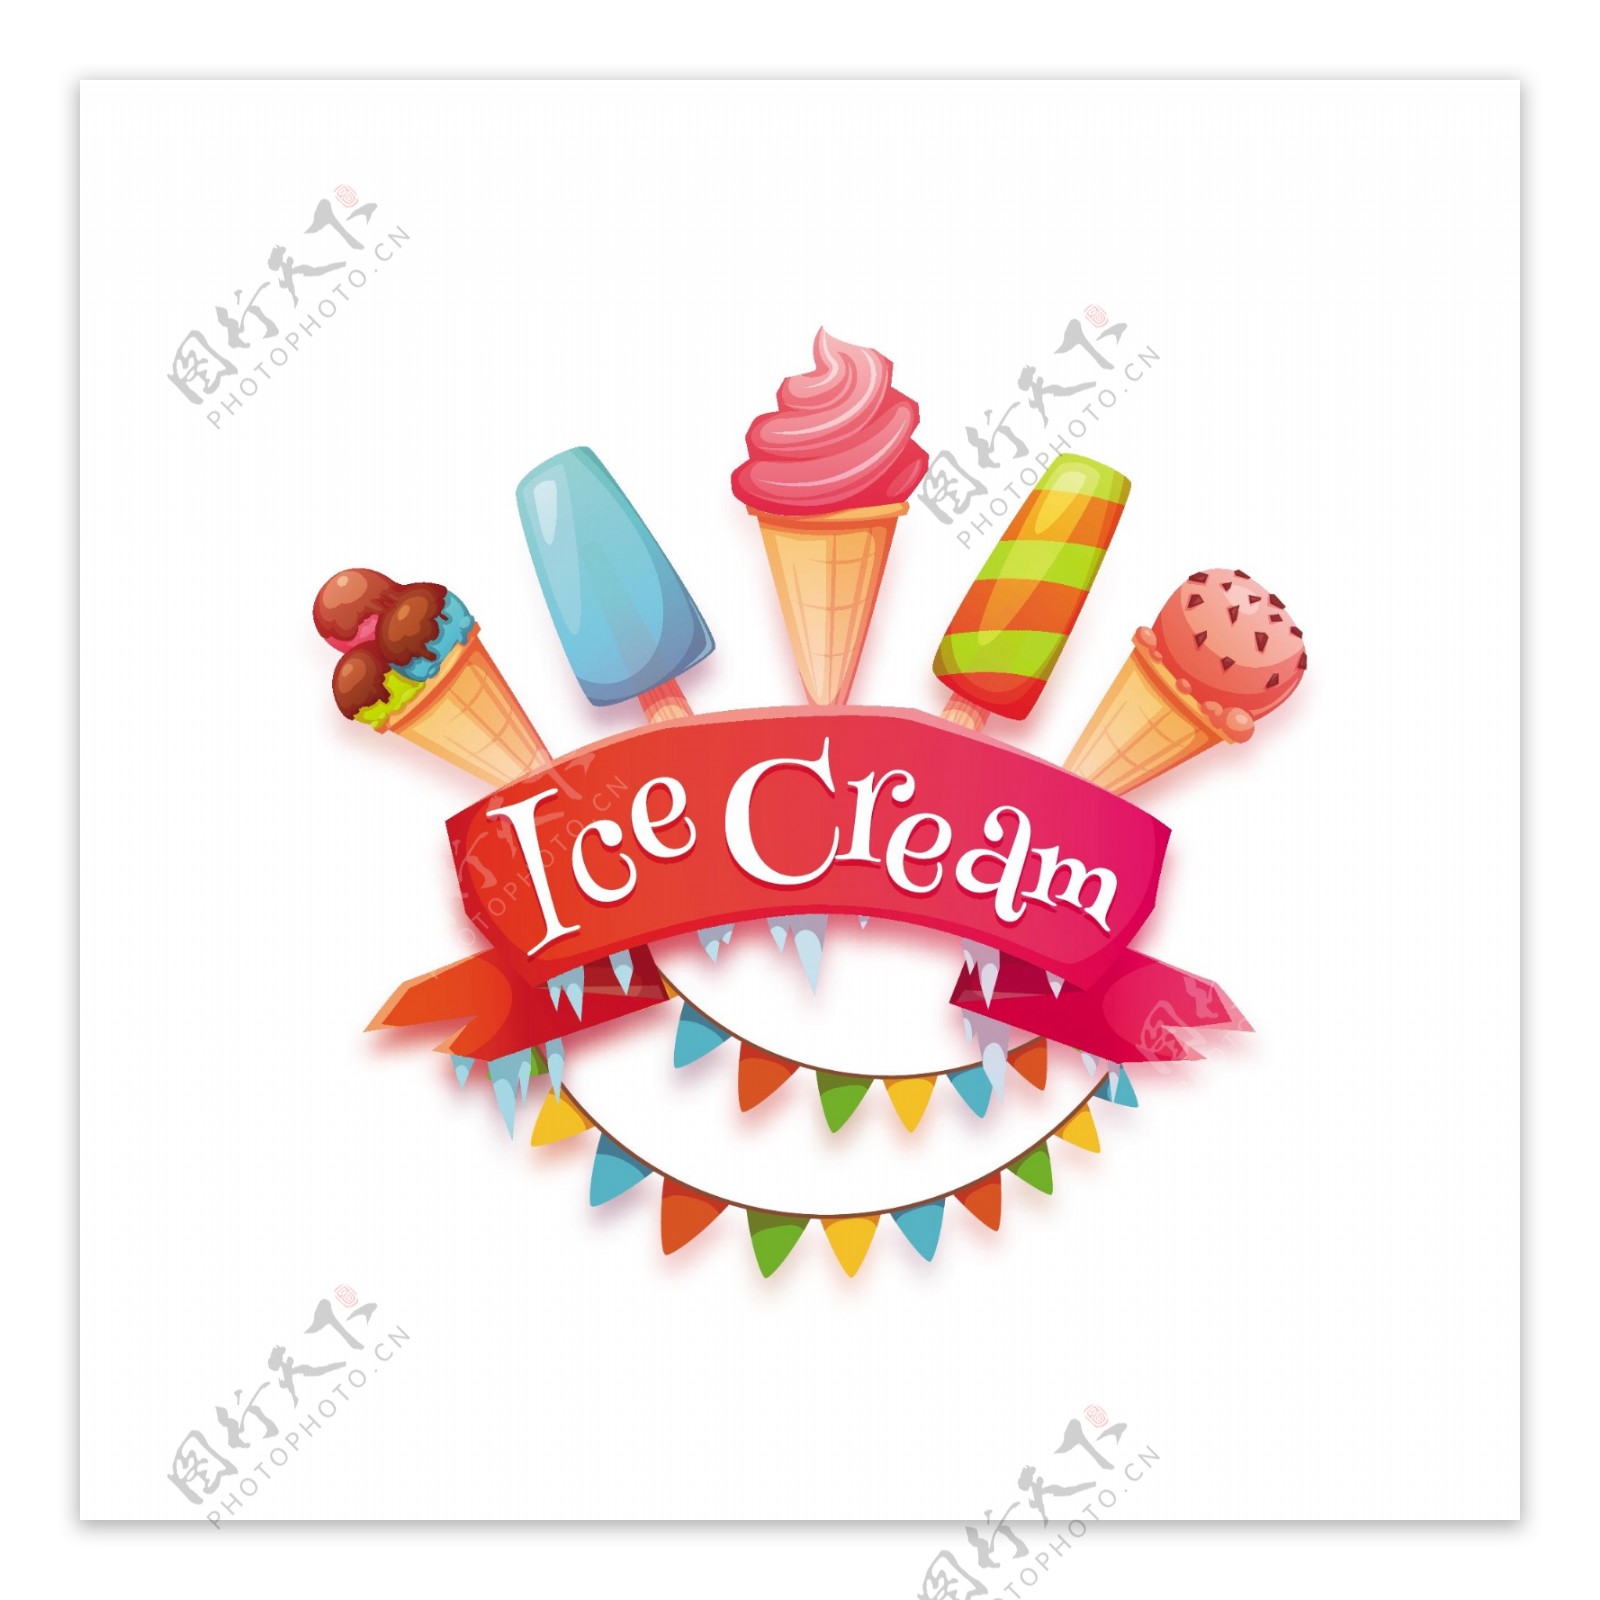 美味的冰淇淋雪糕等甜品矢量素材